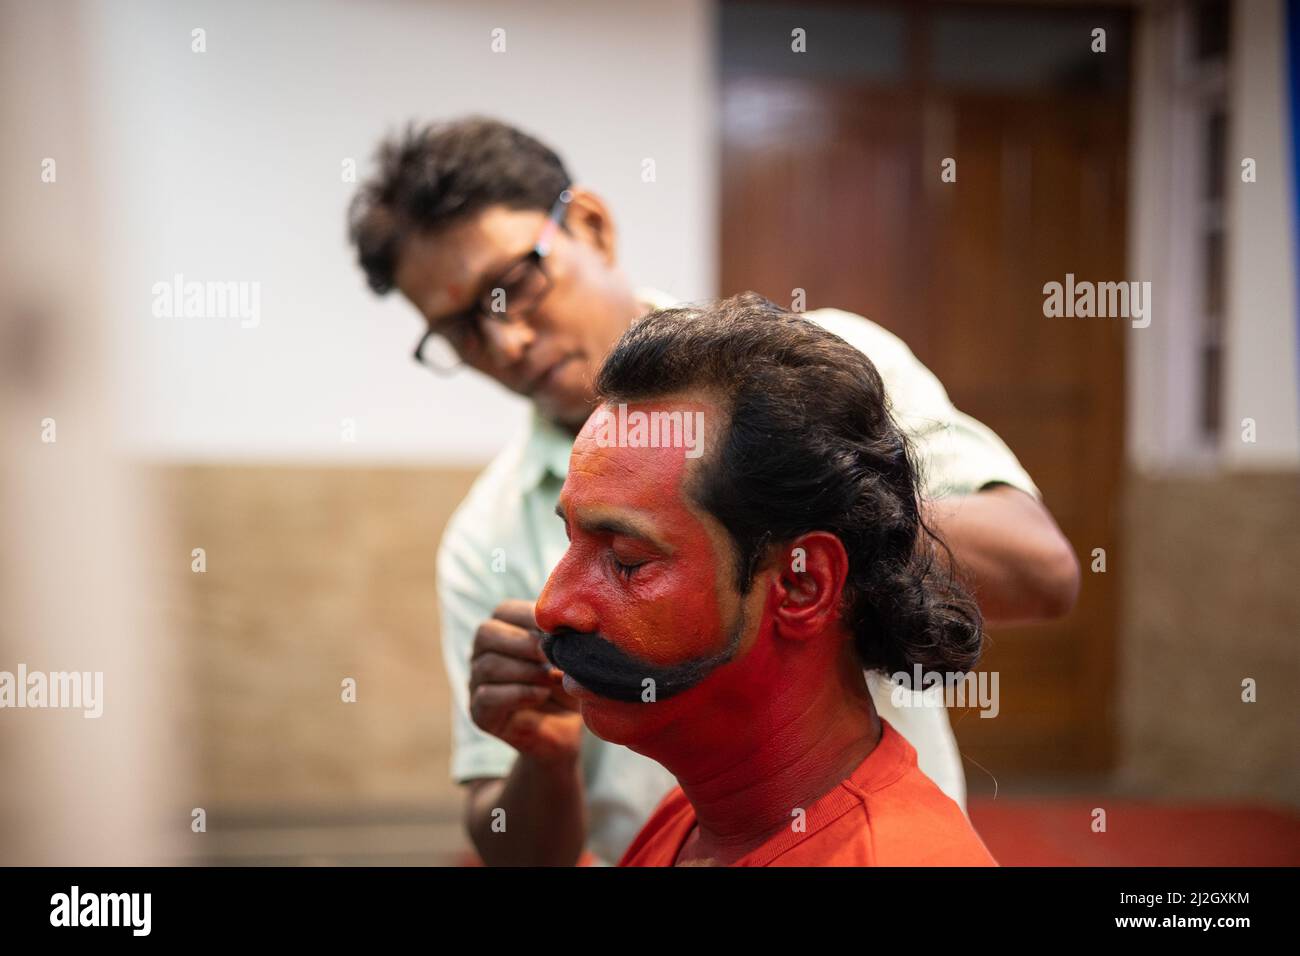 Face Makeover Künstler Befestigung gefälschte Schnurrbart auf Gesicht des Menschen soll die Rolle der Virabhadra für die jährliche Volkstanzvorstellung in Goa spielen Stockfoto